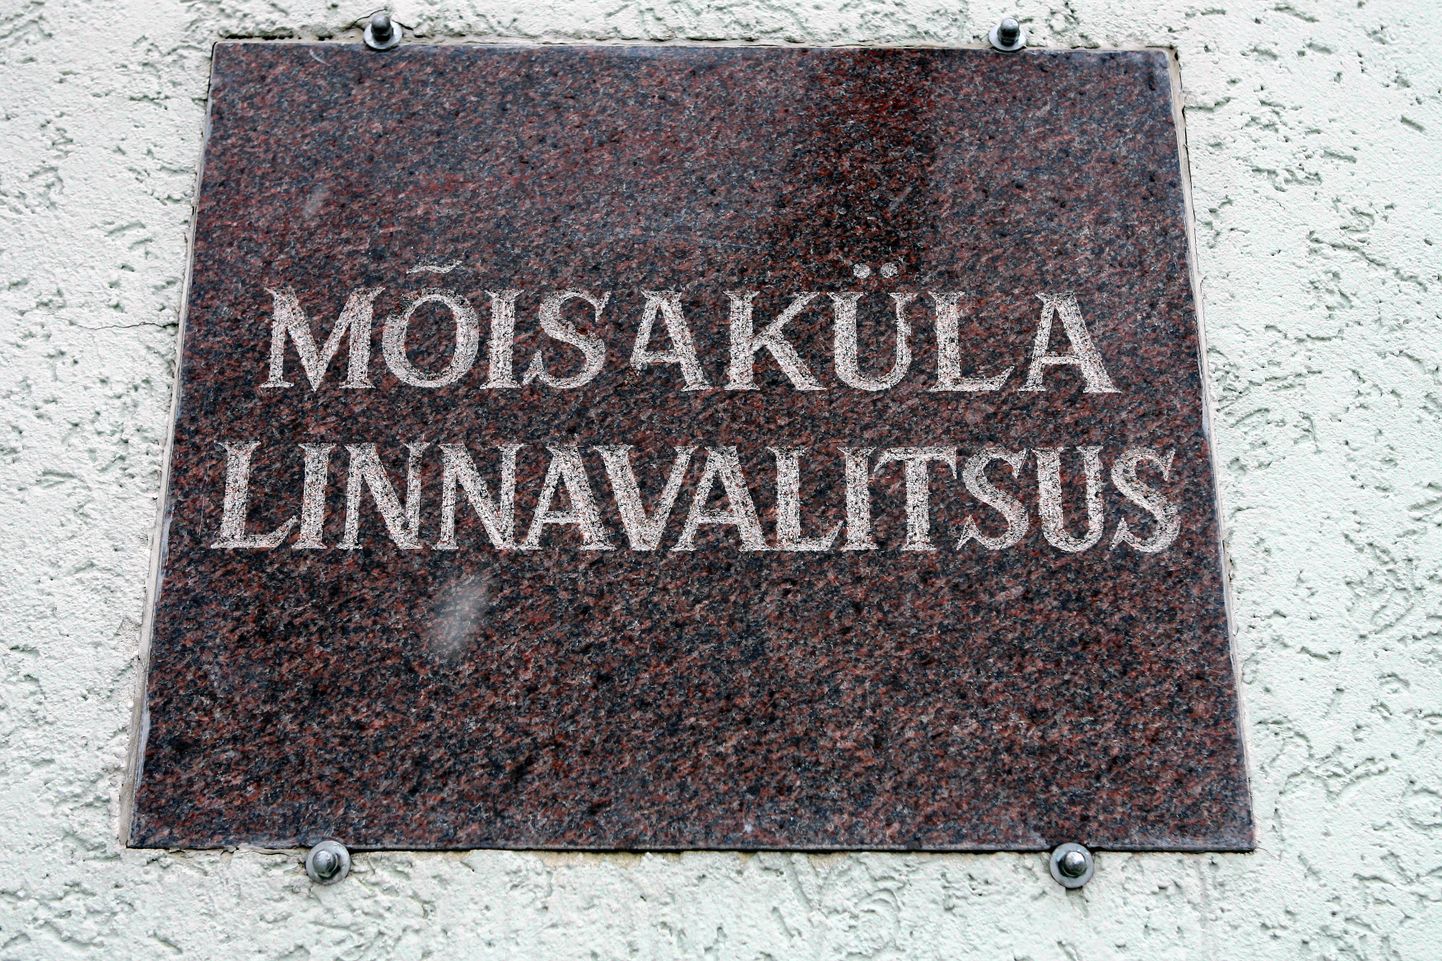 Eesti kõige väiksema linna Mõisaküla elanike arv langes sel aastal ametlikult esimest korda alla tuhande.